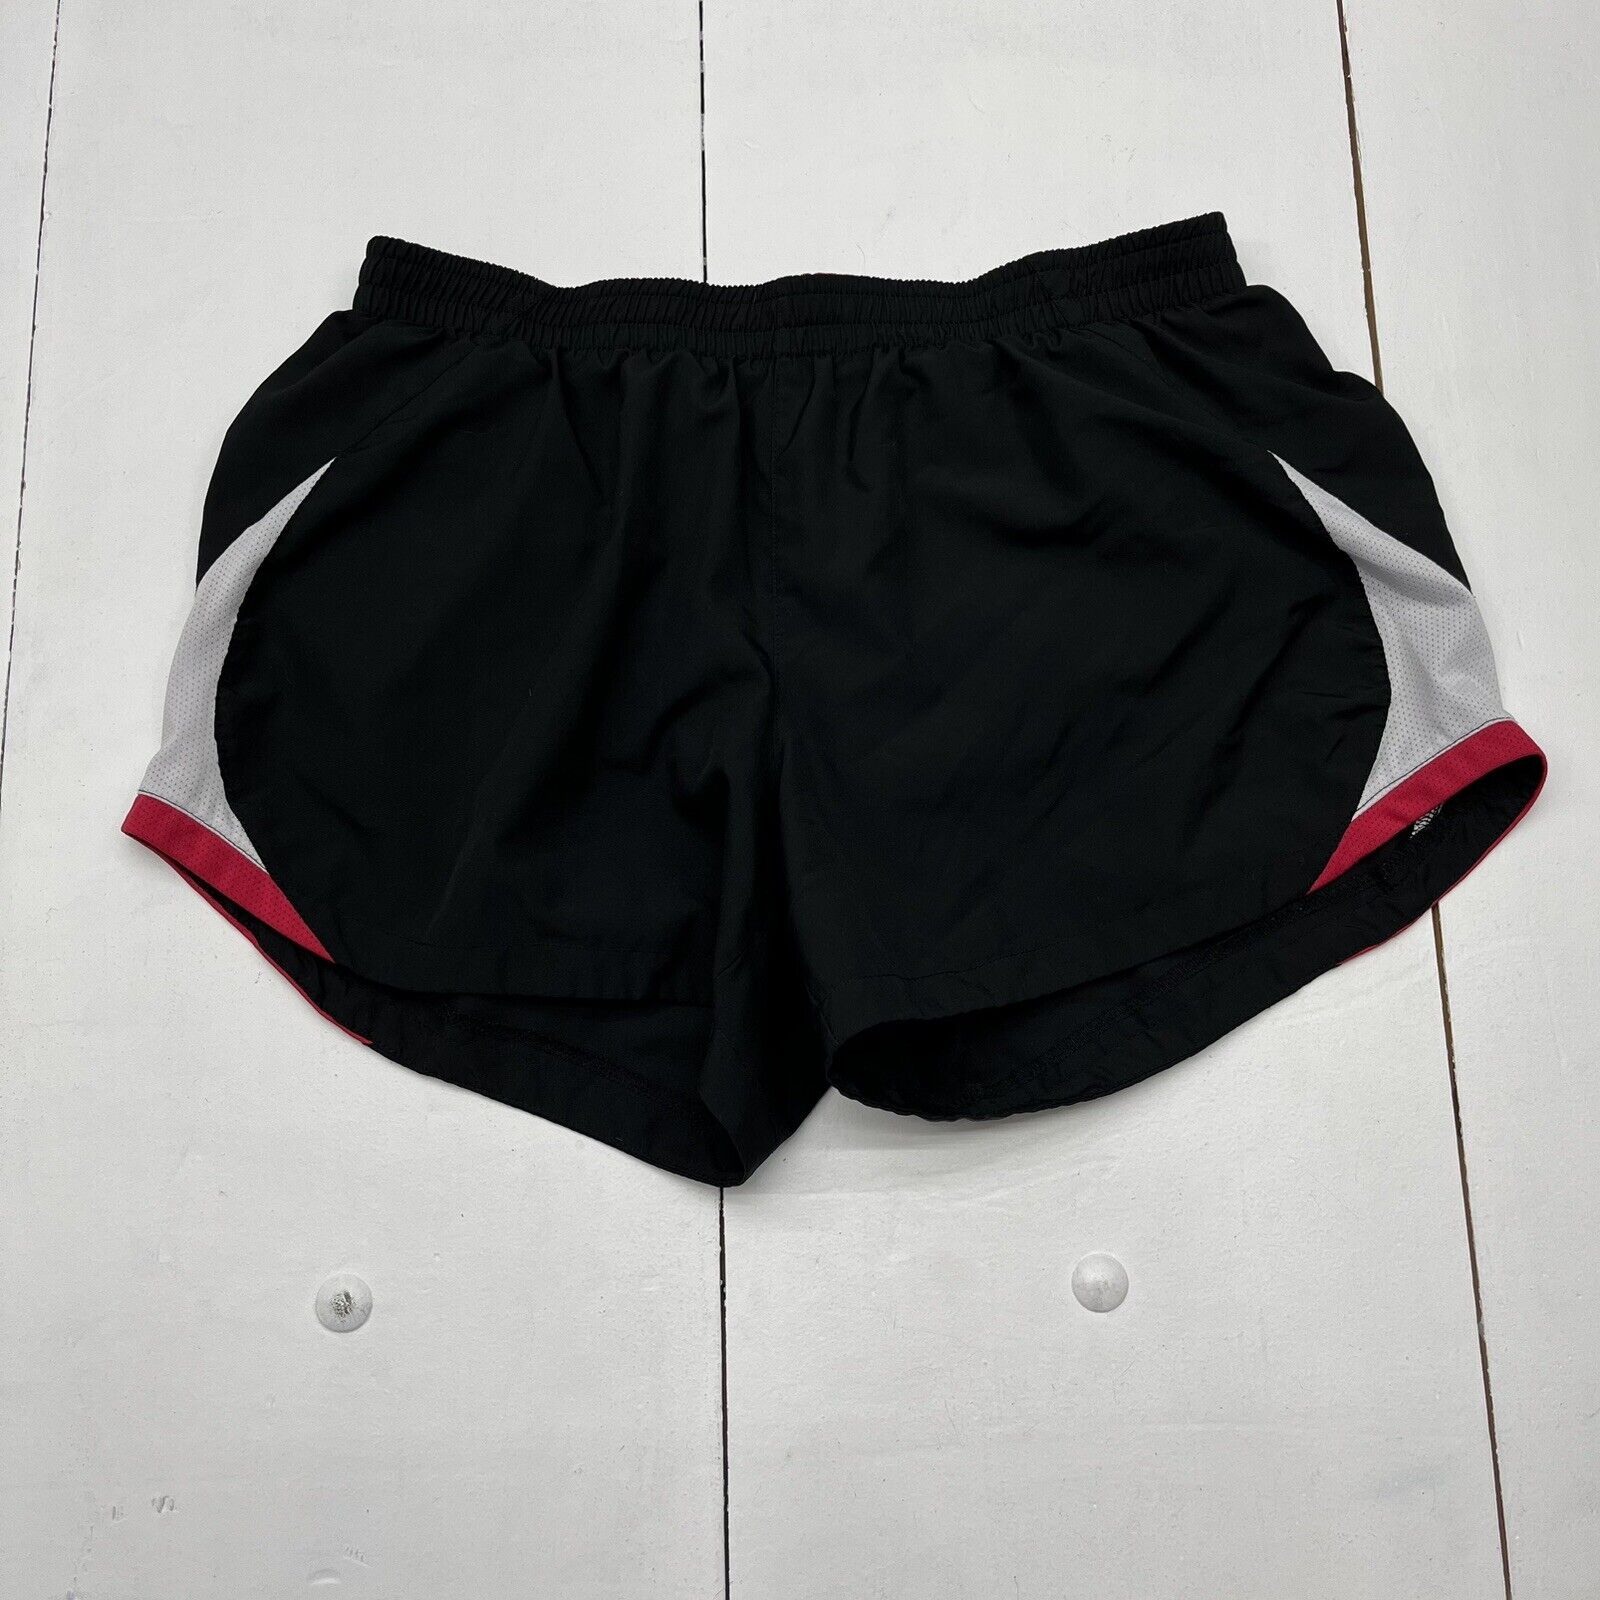 Nike Black / Hot Pink Performance Athletic Shorts Girls Size Large (12-14)